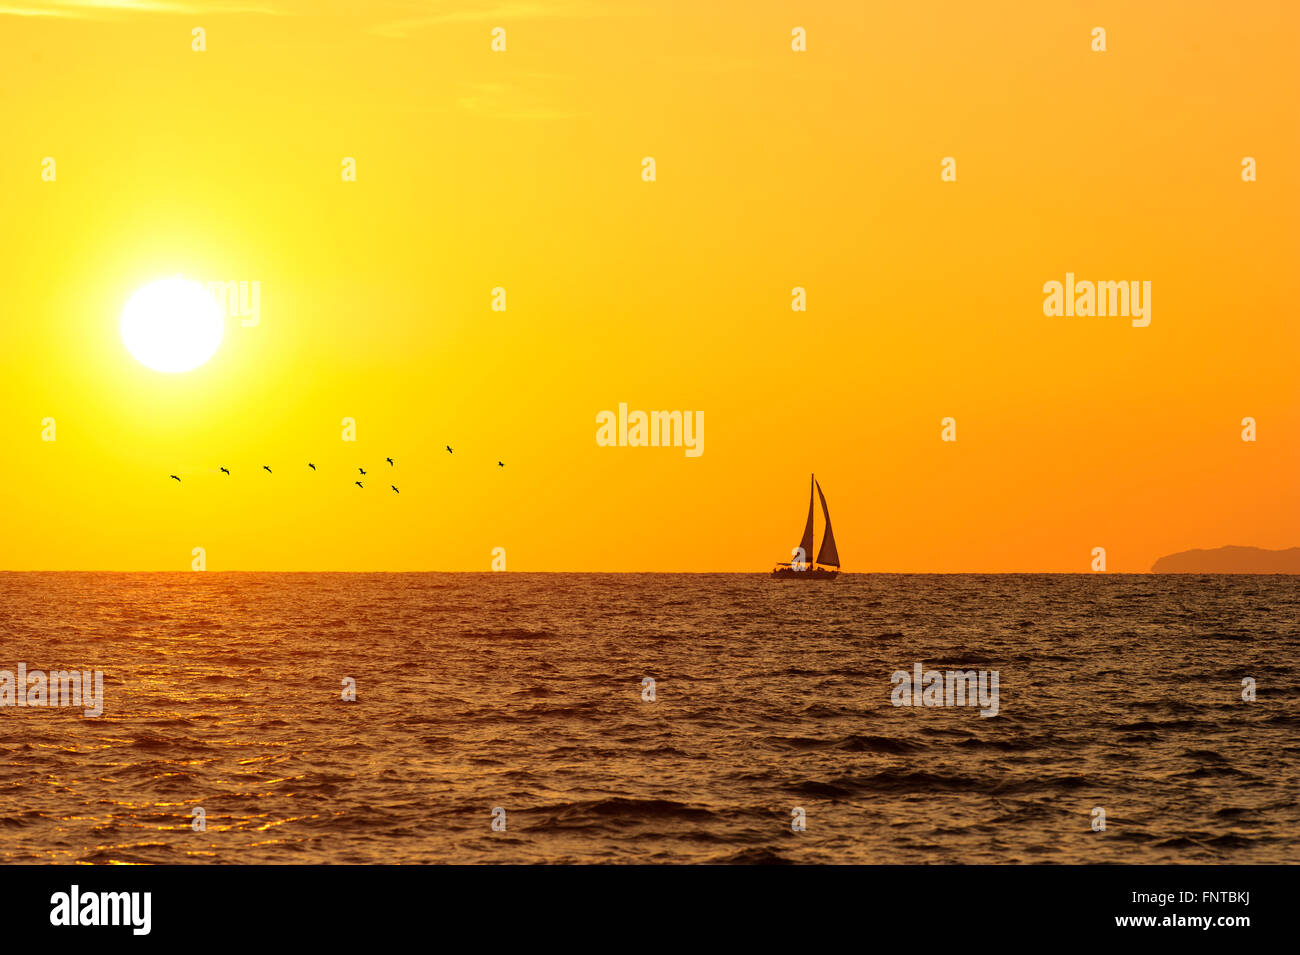 Voilier coucher du soleil est la silhouette d'un voilier avec un blanc chaud brûlant de soleil sur l'océan contre un horizon orange vif Banque D'Images